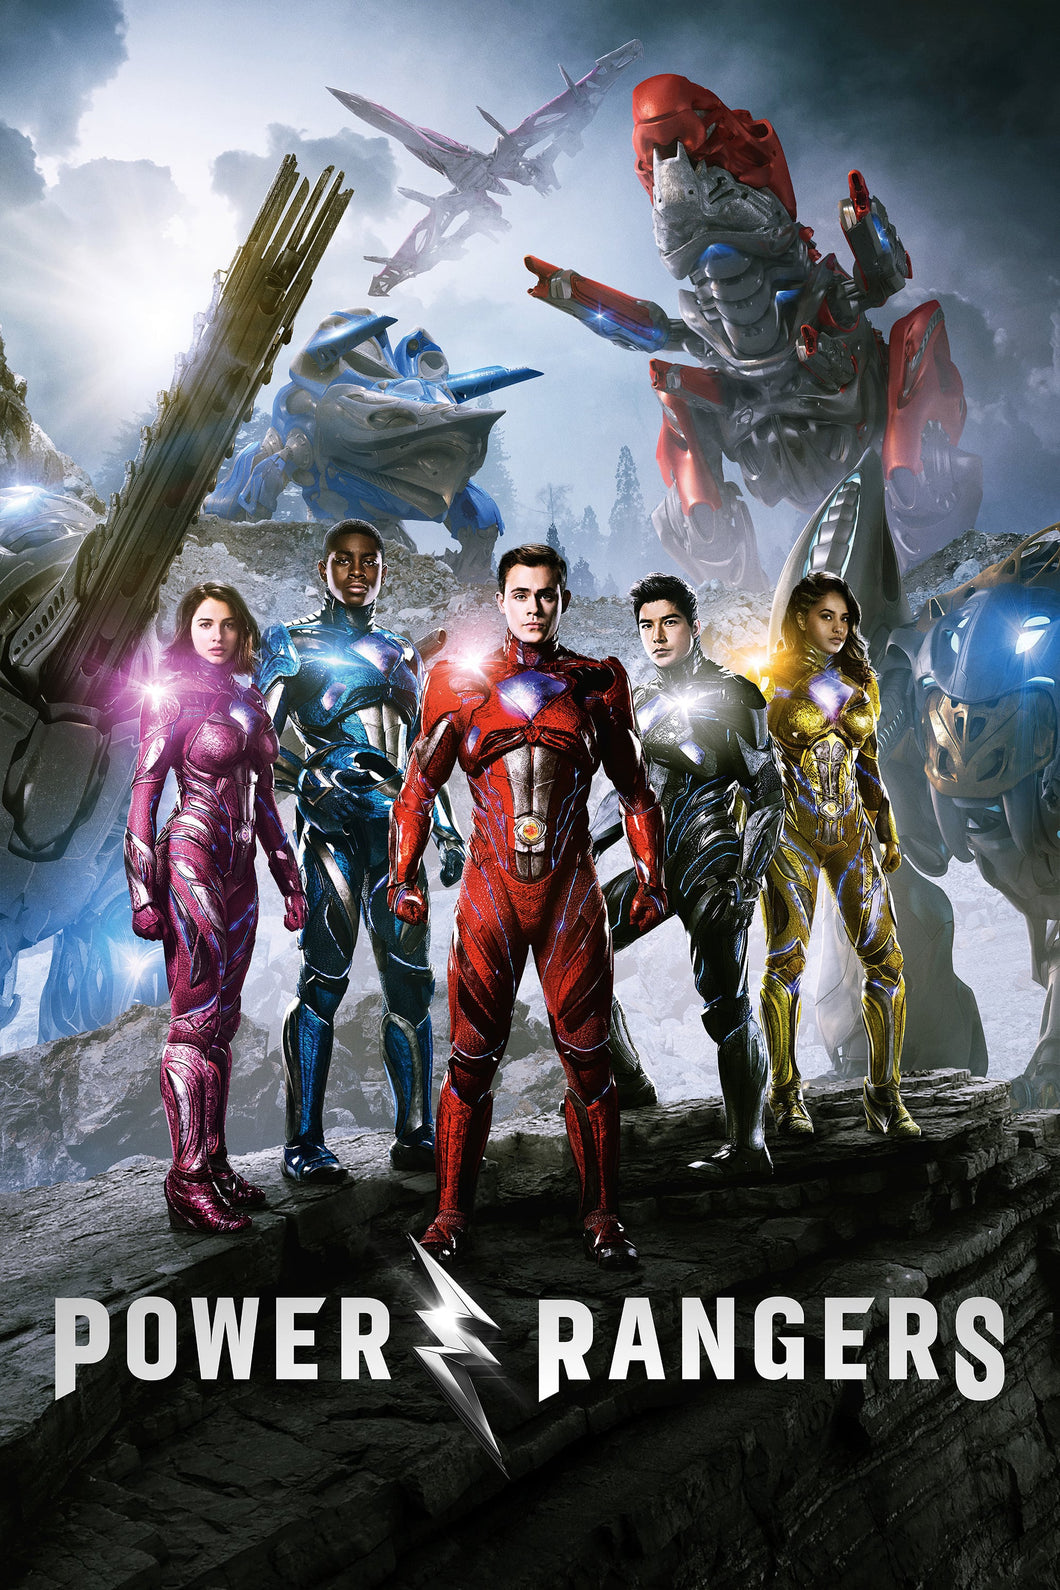 Power Rangers (2017) V2 Poster Framed or Unframed Glossy Poster Free UK Shipping!!!